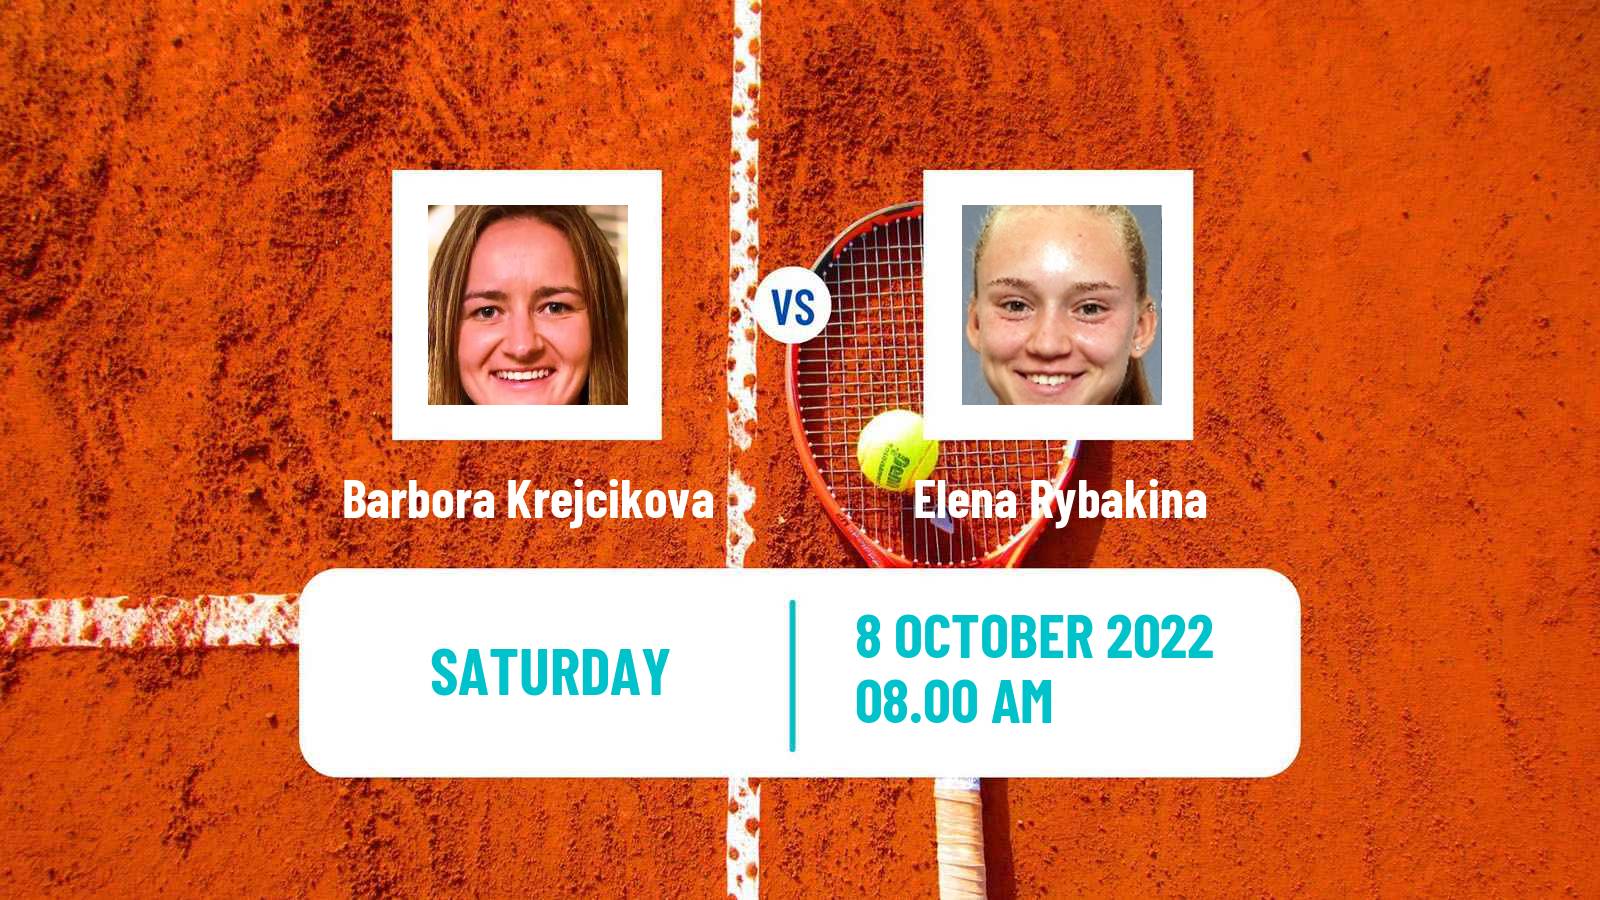 Tennis WTA Ostrava Barbora Krejcikova - Elena Rybakina